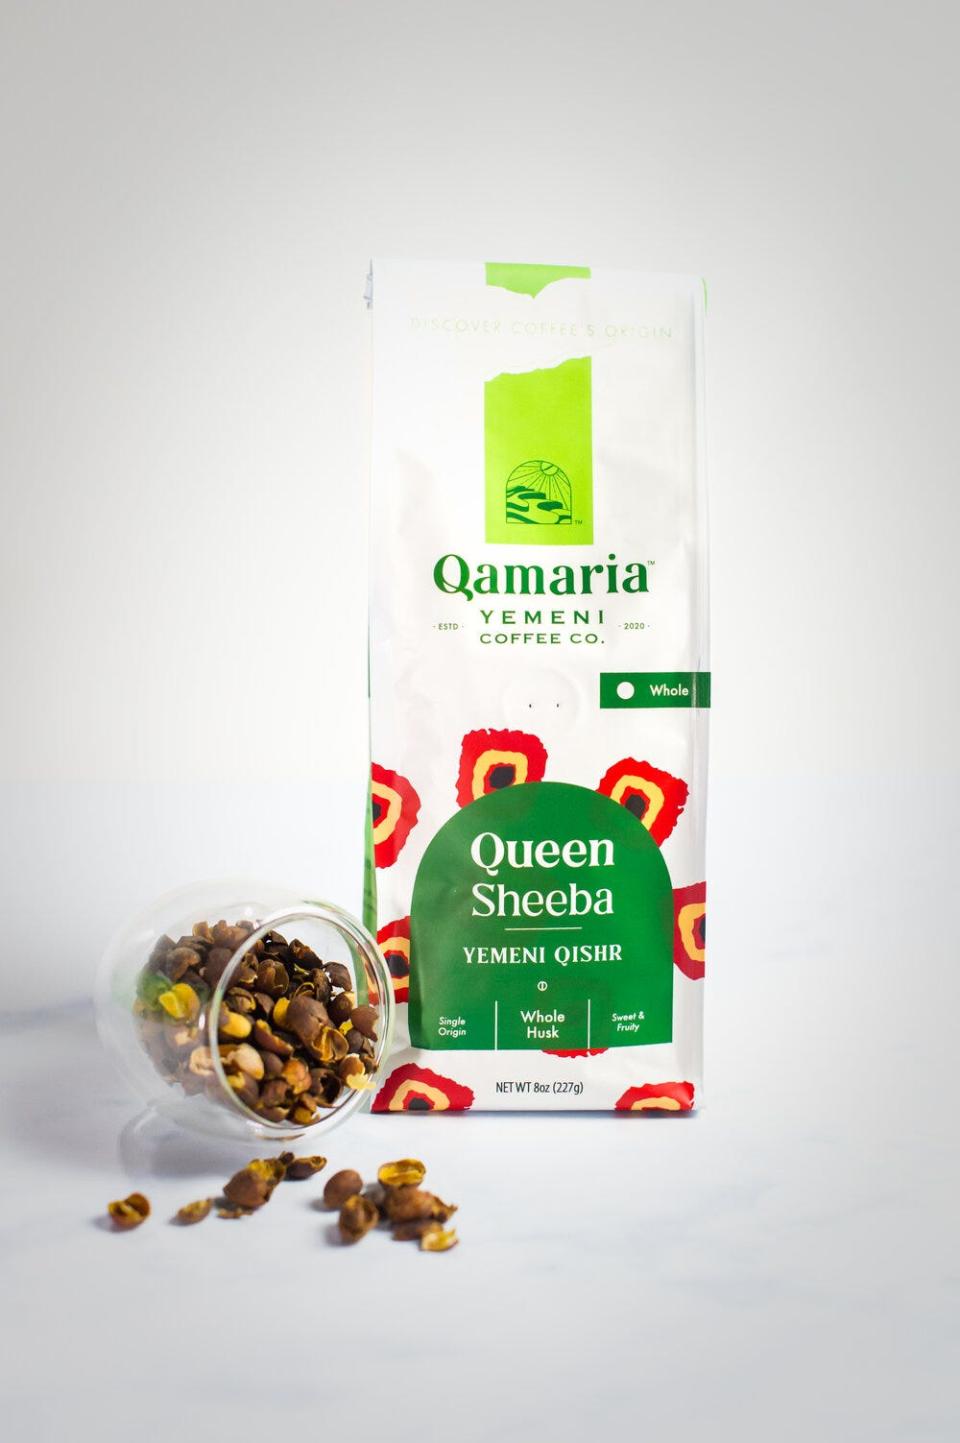 Coffee beans from Qamaria